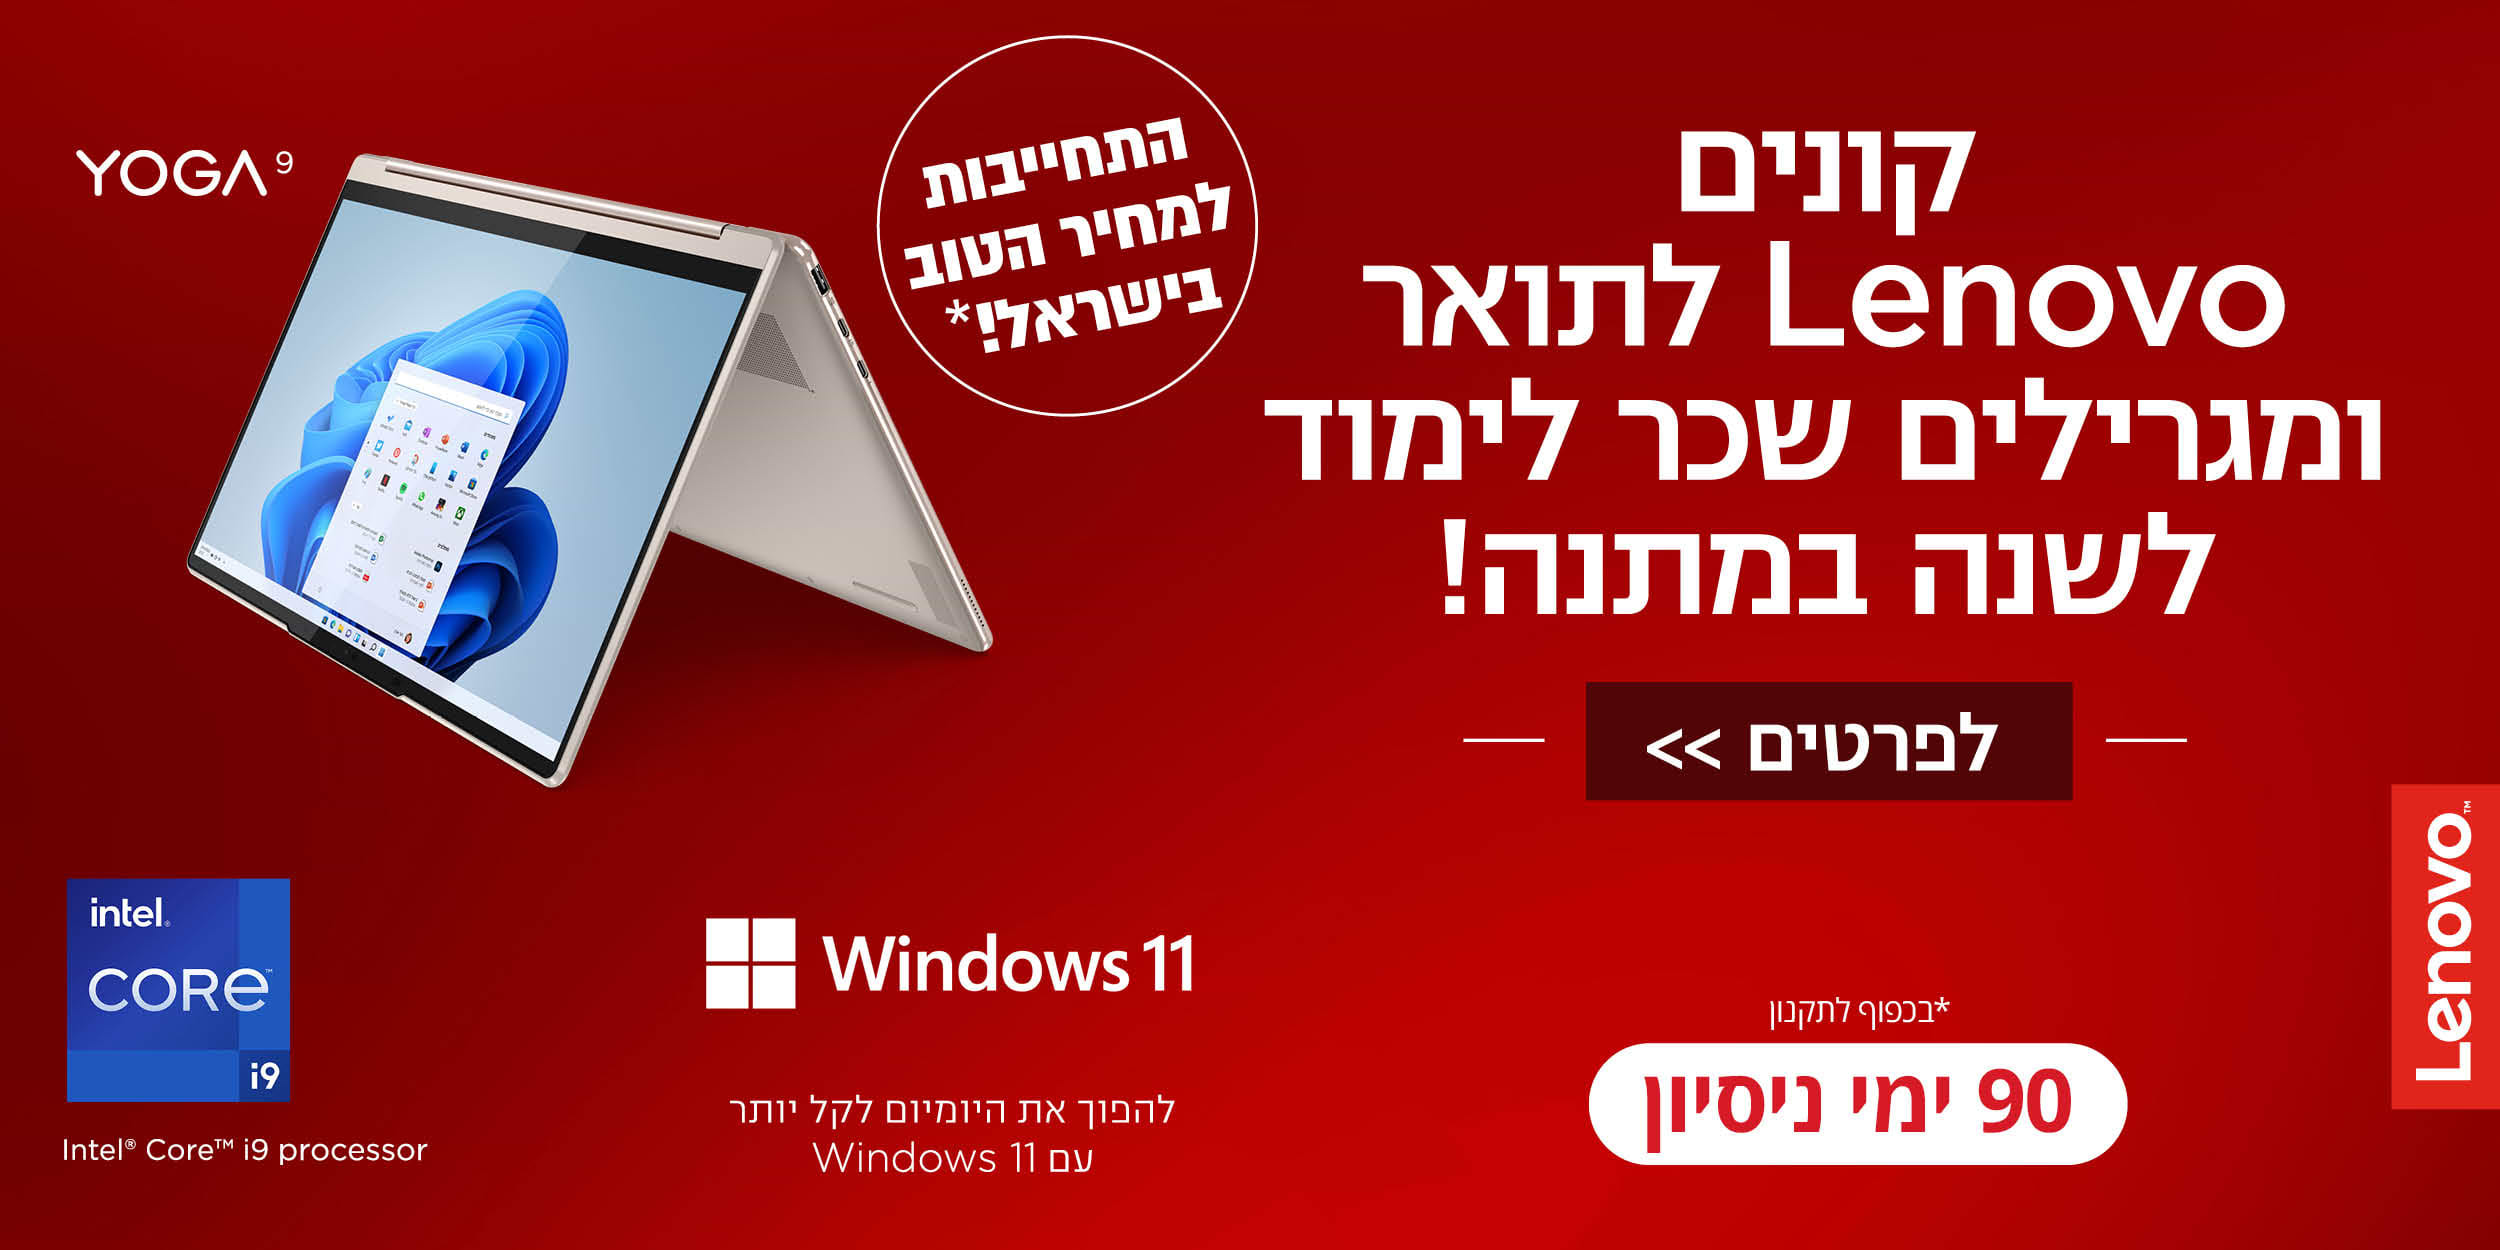 קונים Lenovo לתואר ומגרילים שכר לימוד לשנה במתנה! 90 ימי ניסיון Windows 11 להפוך את היומיום לקל יותר עם Windows 11 התחייבות למחיר הטוב בישראל!* *בכפוף לתקנון